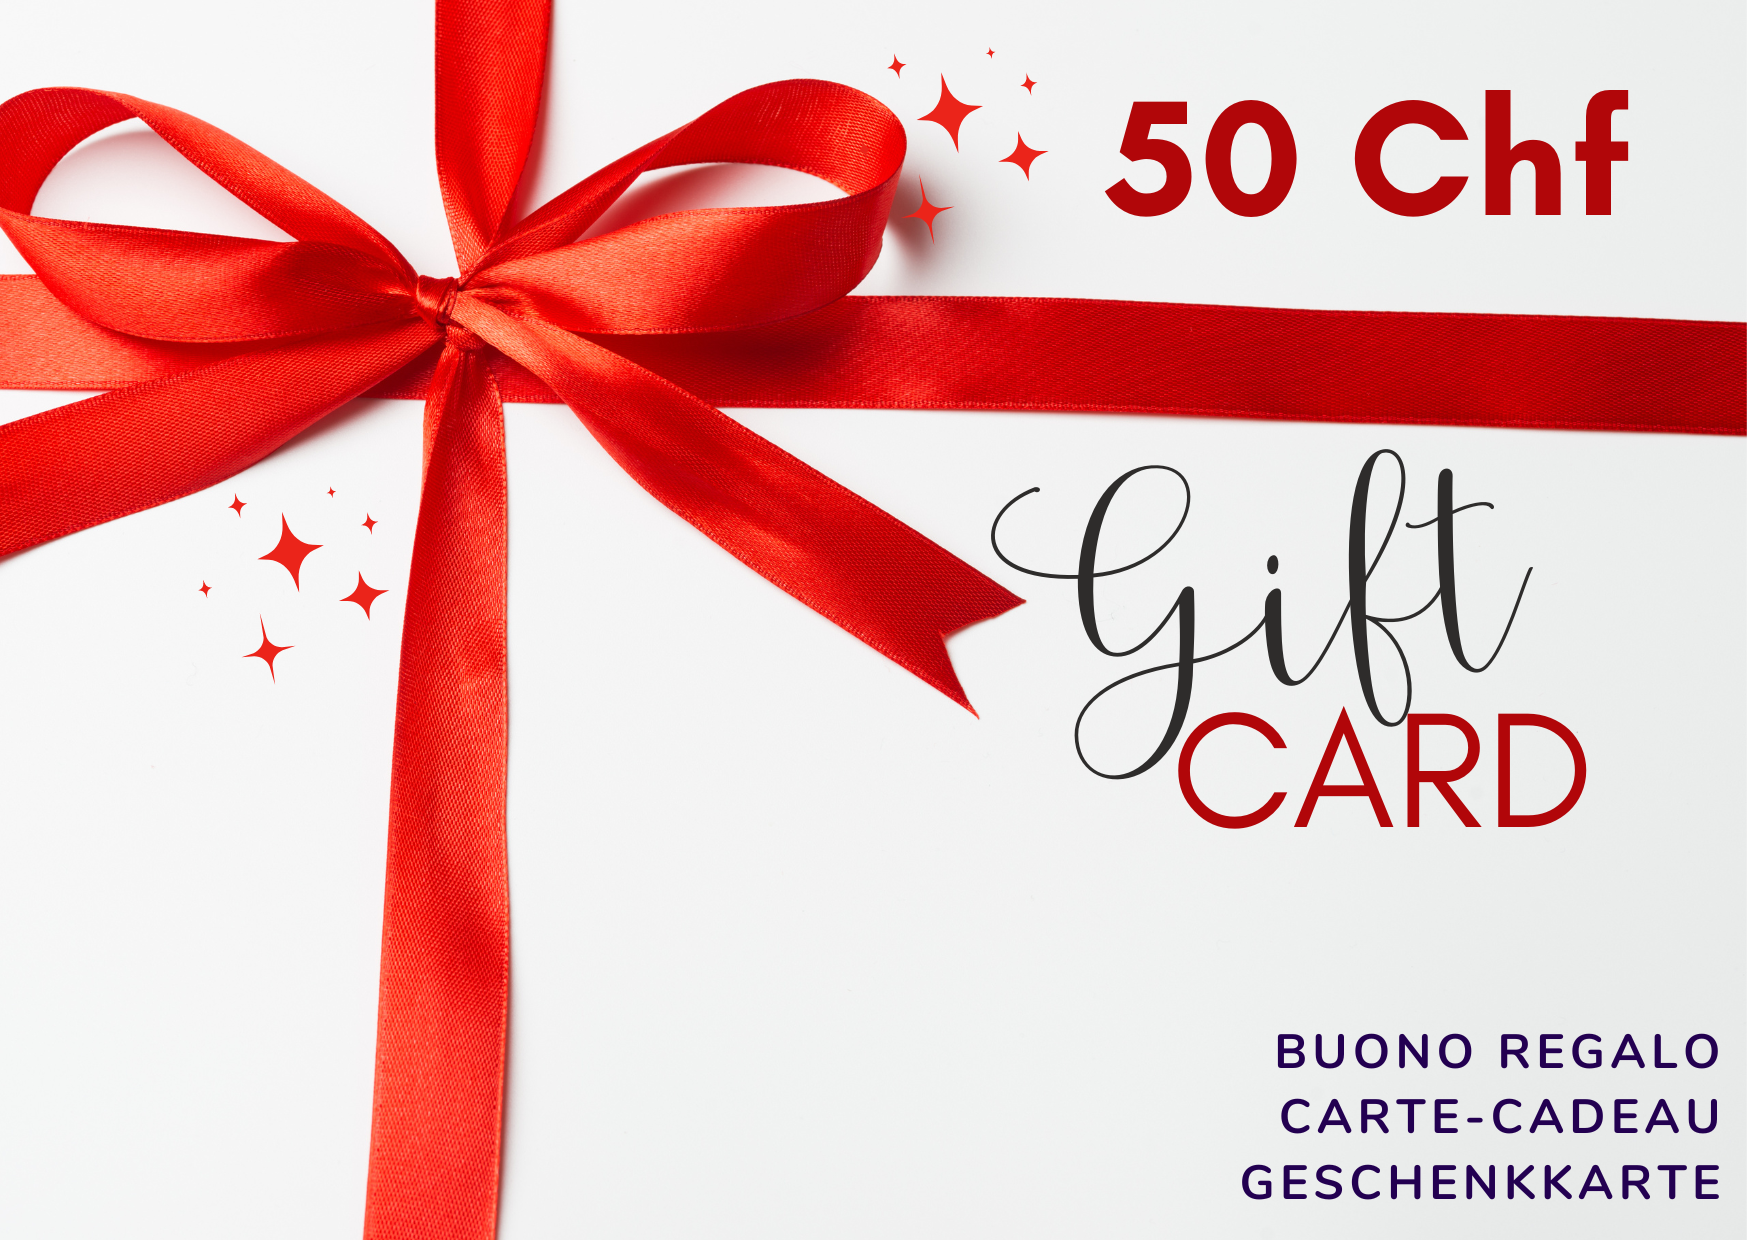  Buono Regalo  - Digitale - Pacchetto regalo: Gift Cards